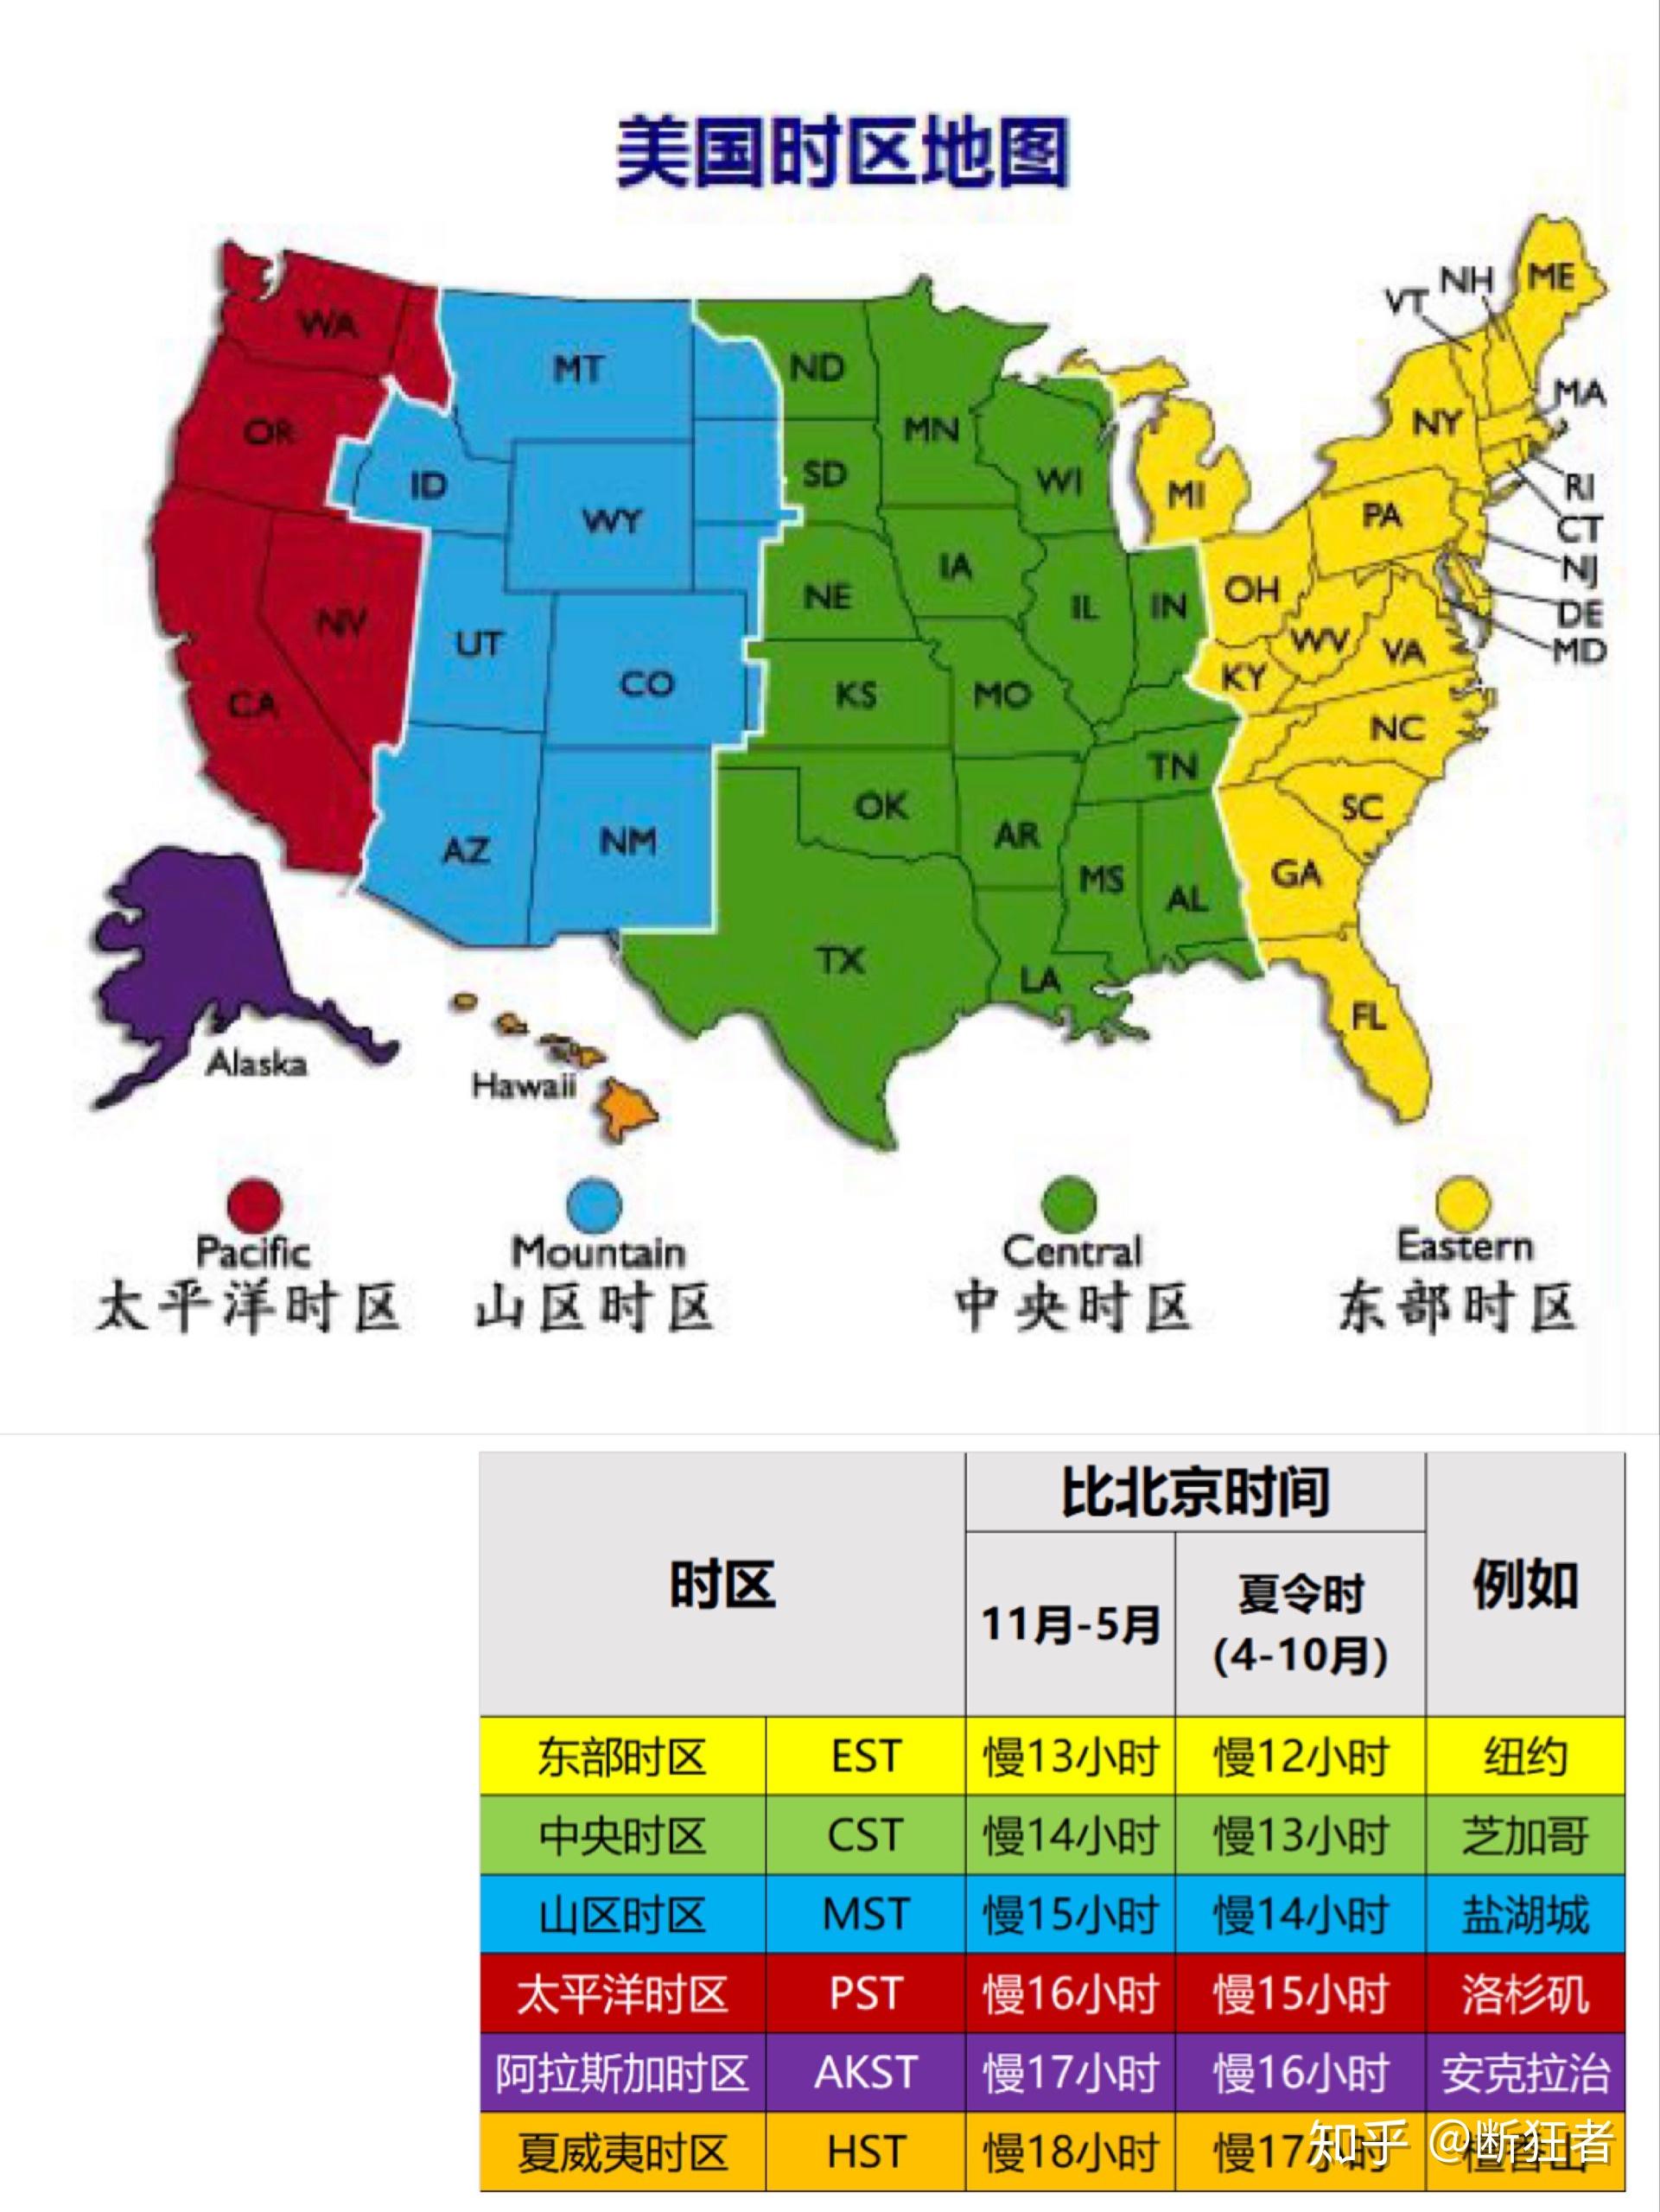 美国人能不能记住美国50个州的英文名字州代码和地理位置